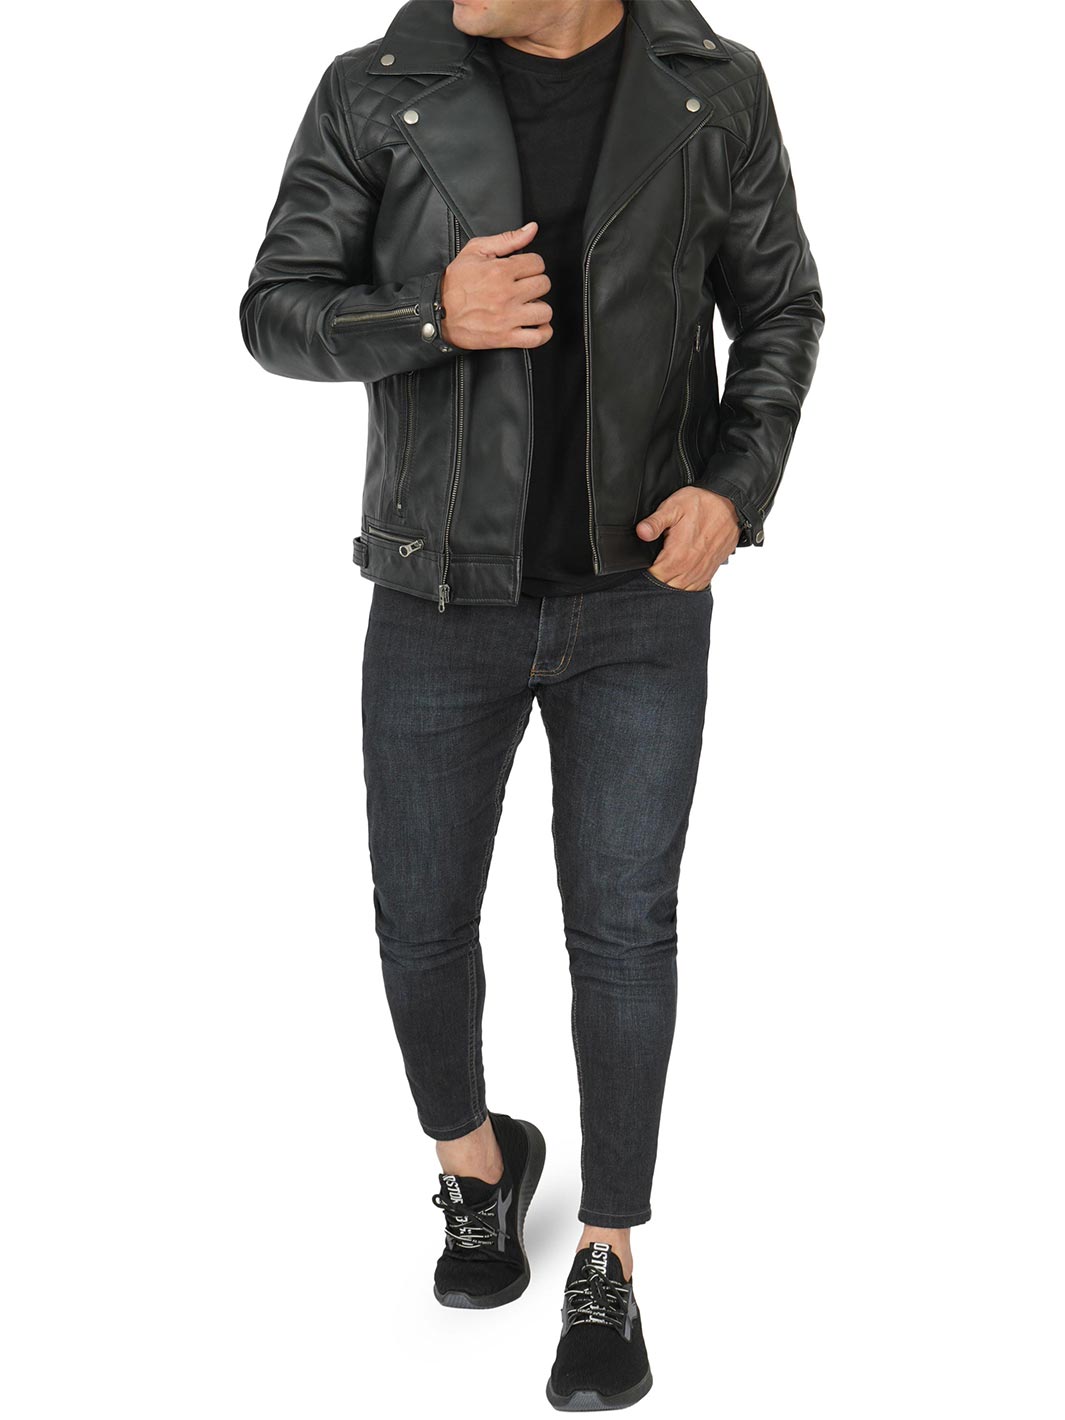 Gordon Men's Black Asymmetrical Biker Leather Jacket